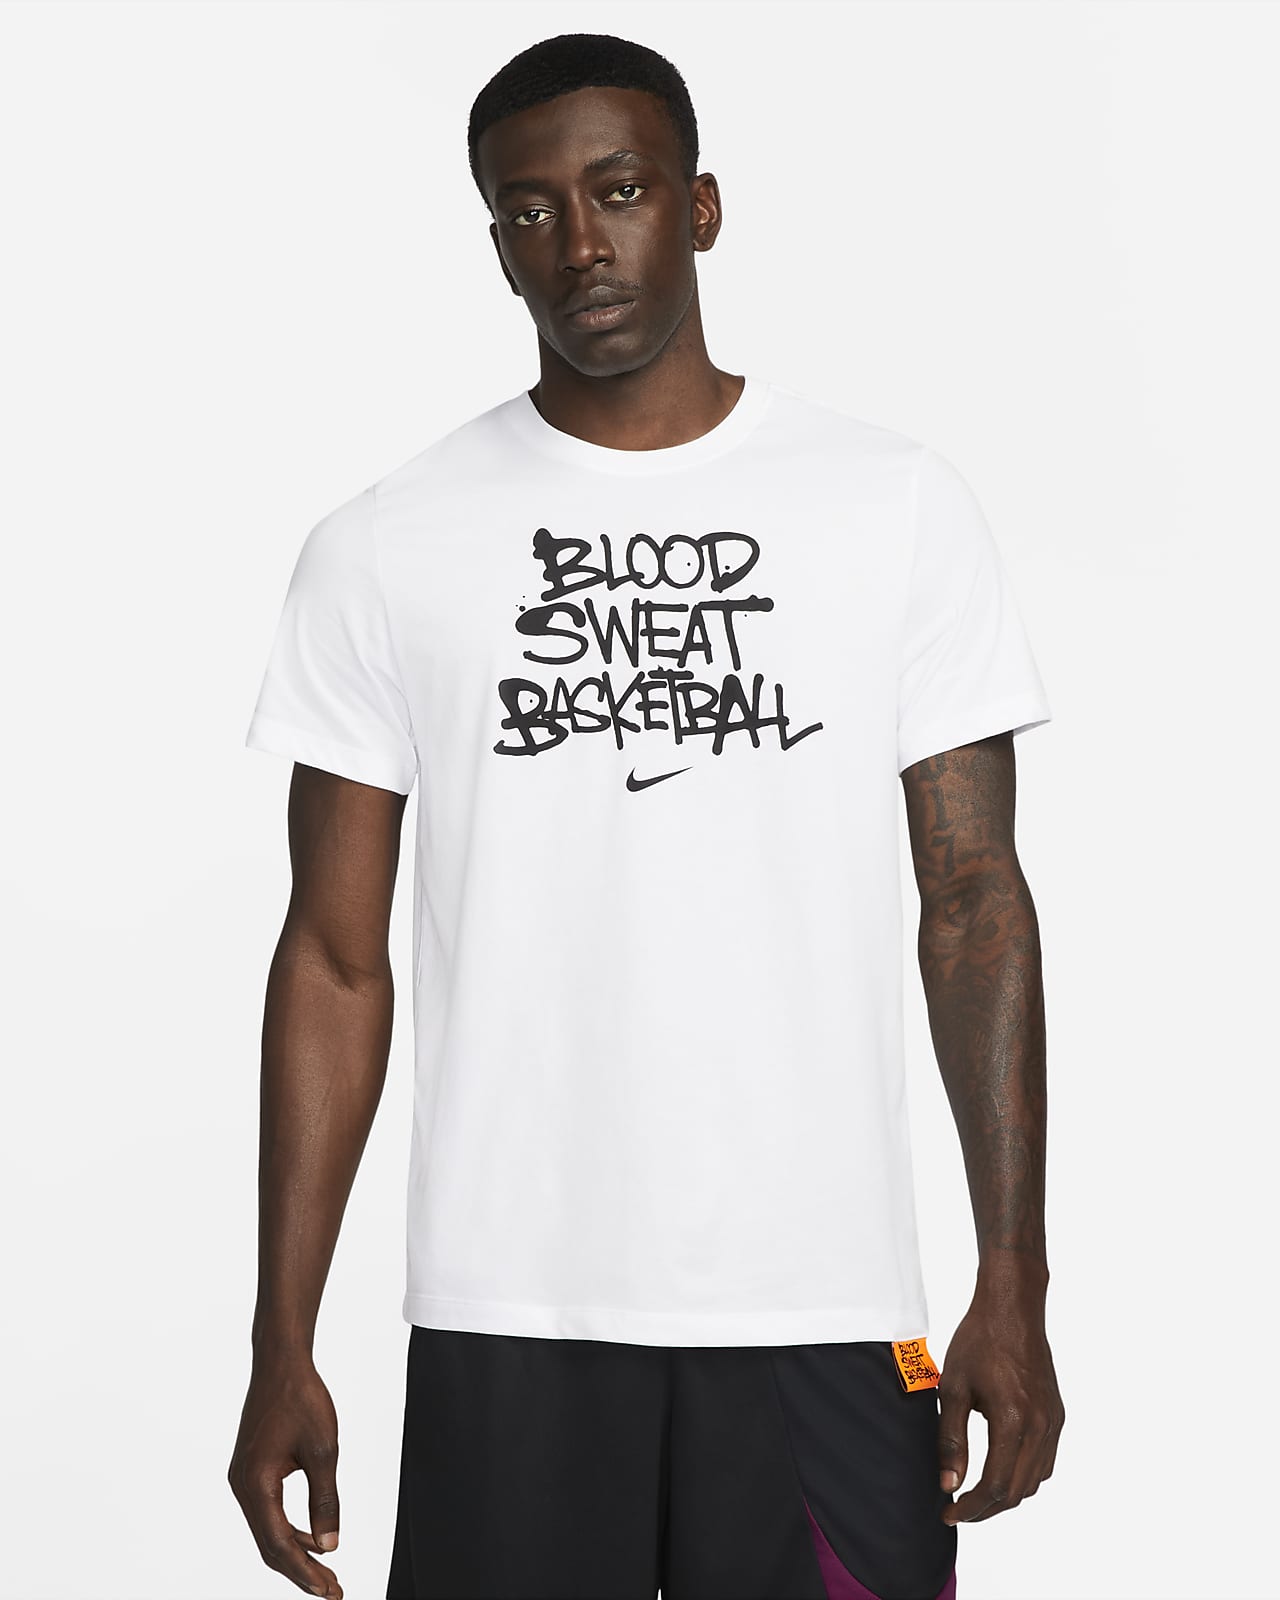 Basket-t-shirt Nike Dri-FIT "Blood, Sweat, Basketball" för män